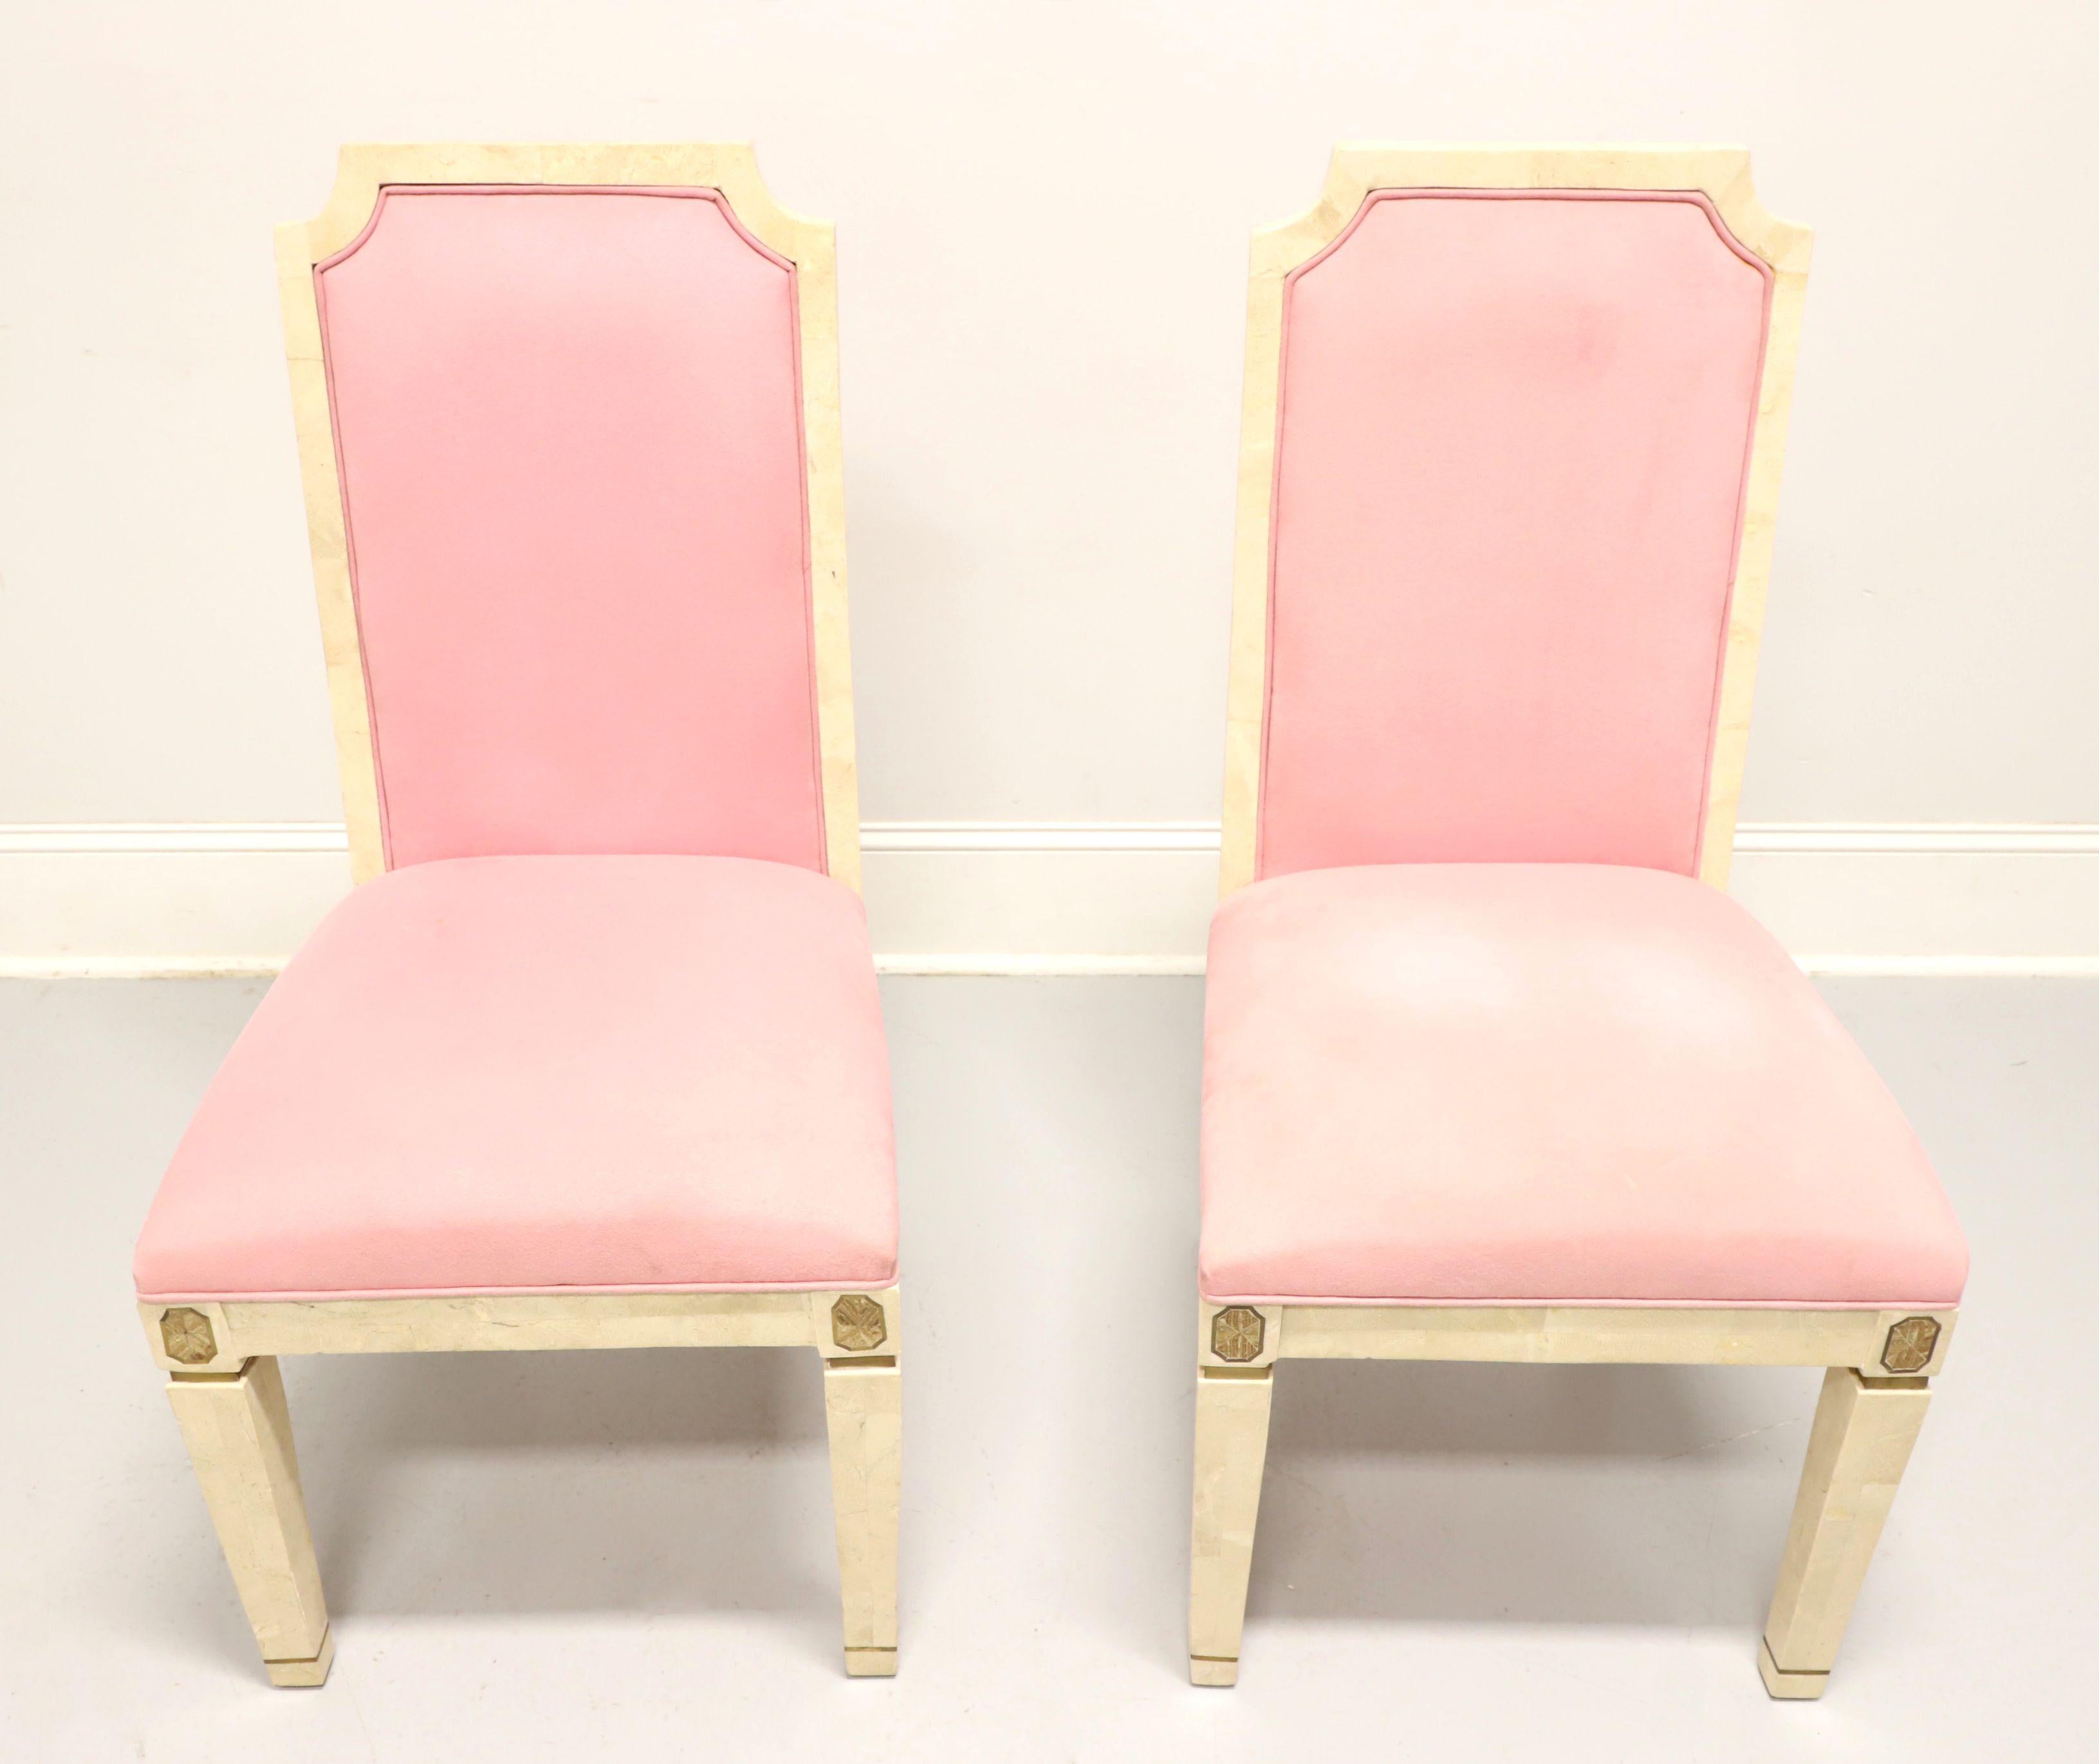 Ein Paar Beistellstühle im neoklassischen Stil von Casa Bique aus Thomasville, North Carolina, USA. Gestell aus Massivholz mit mosaikartigen weißen Marmorfurnieren, hohe Rückenlehnen, gepolsterte Rückenlehnen und Sitze aus rosafarbenem, samtartigem